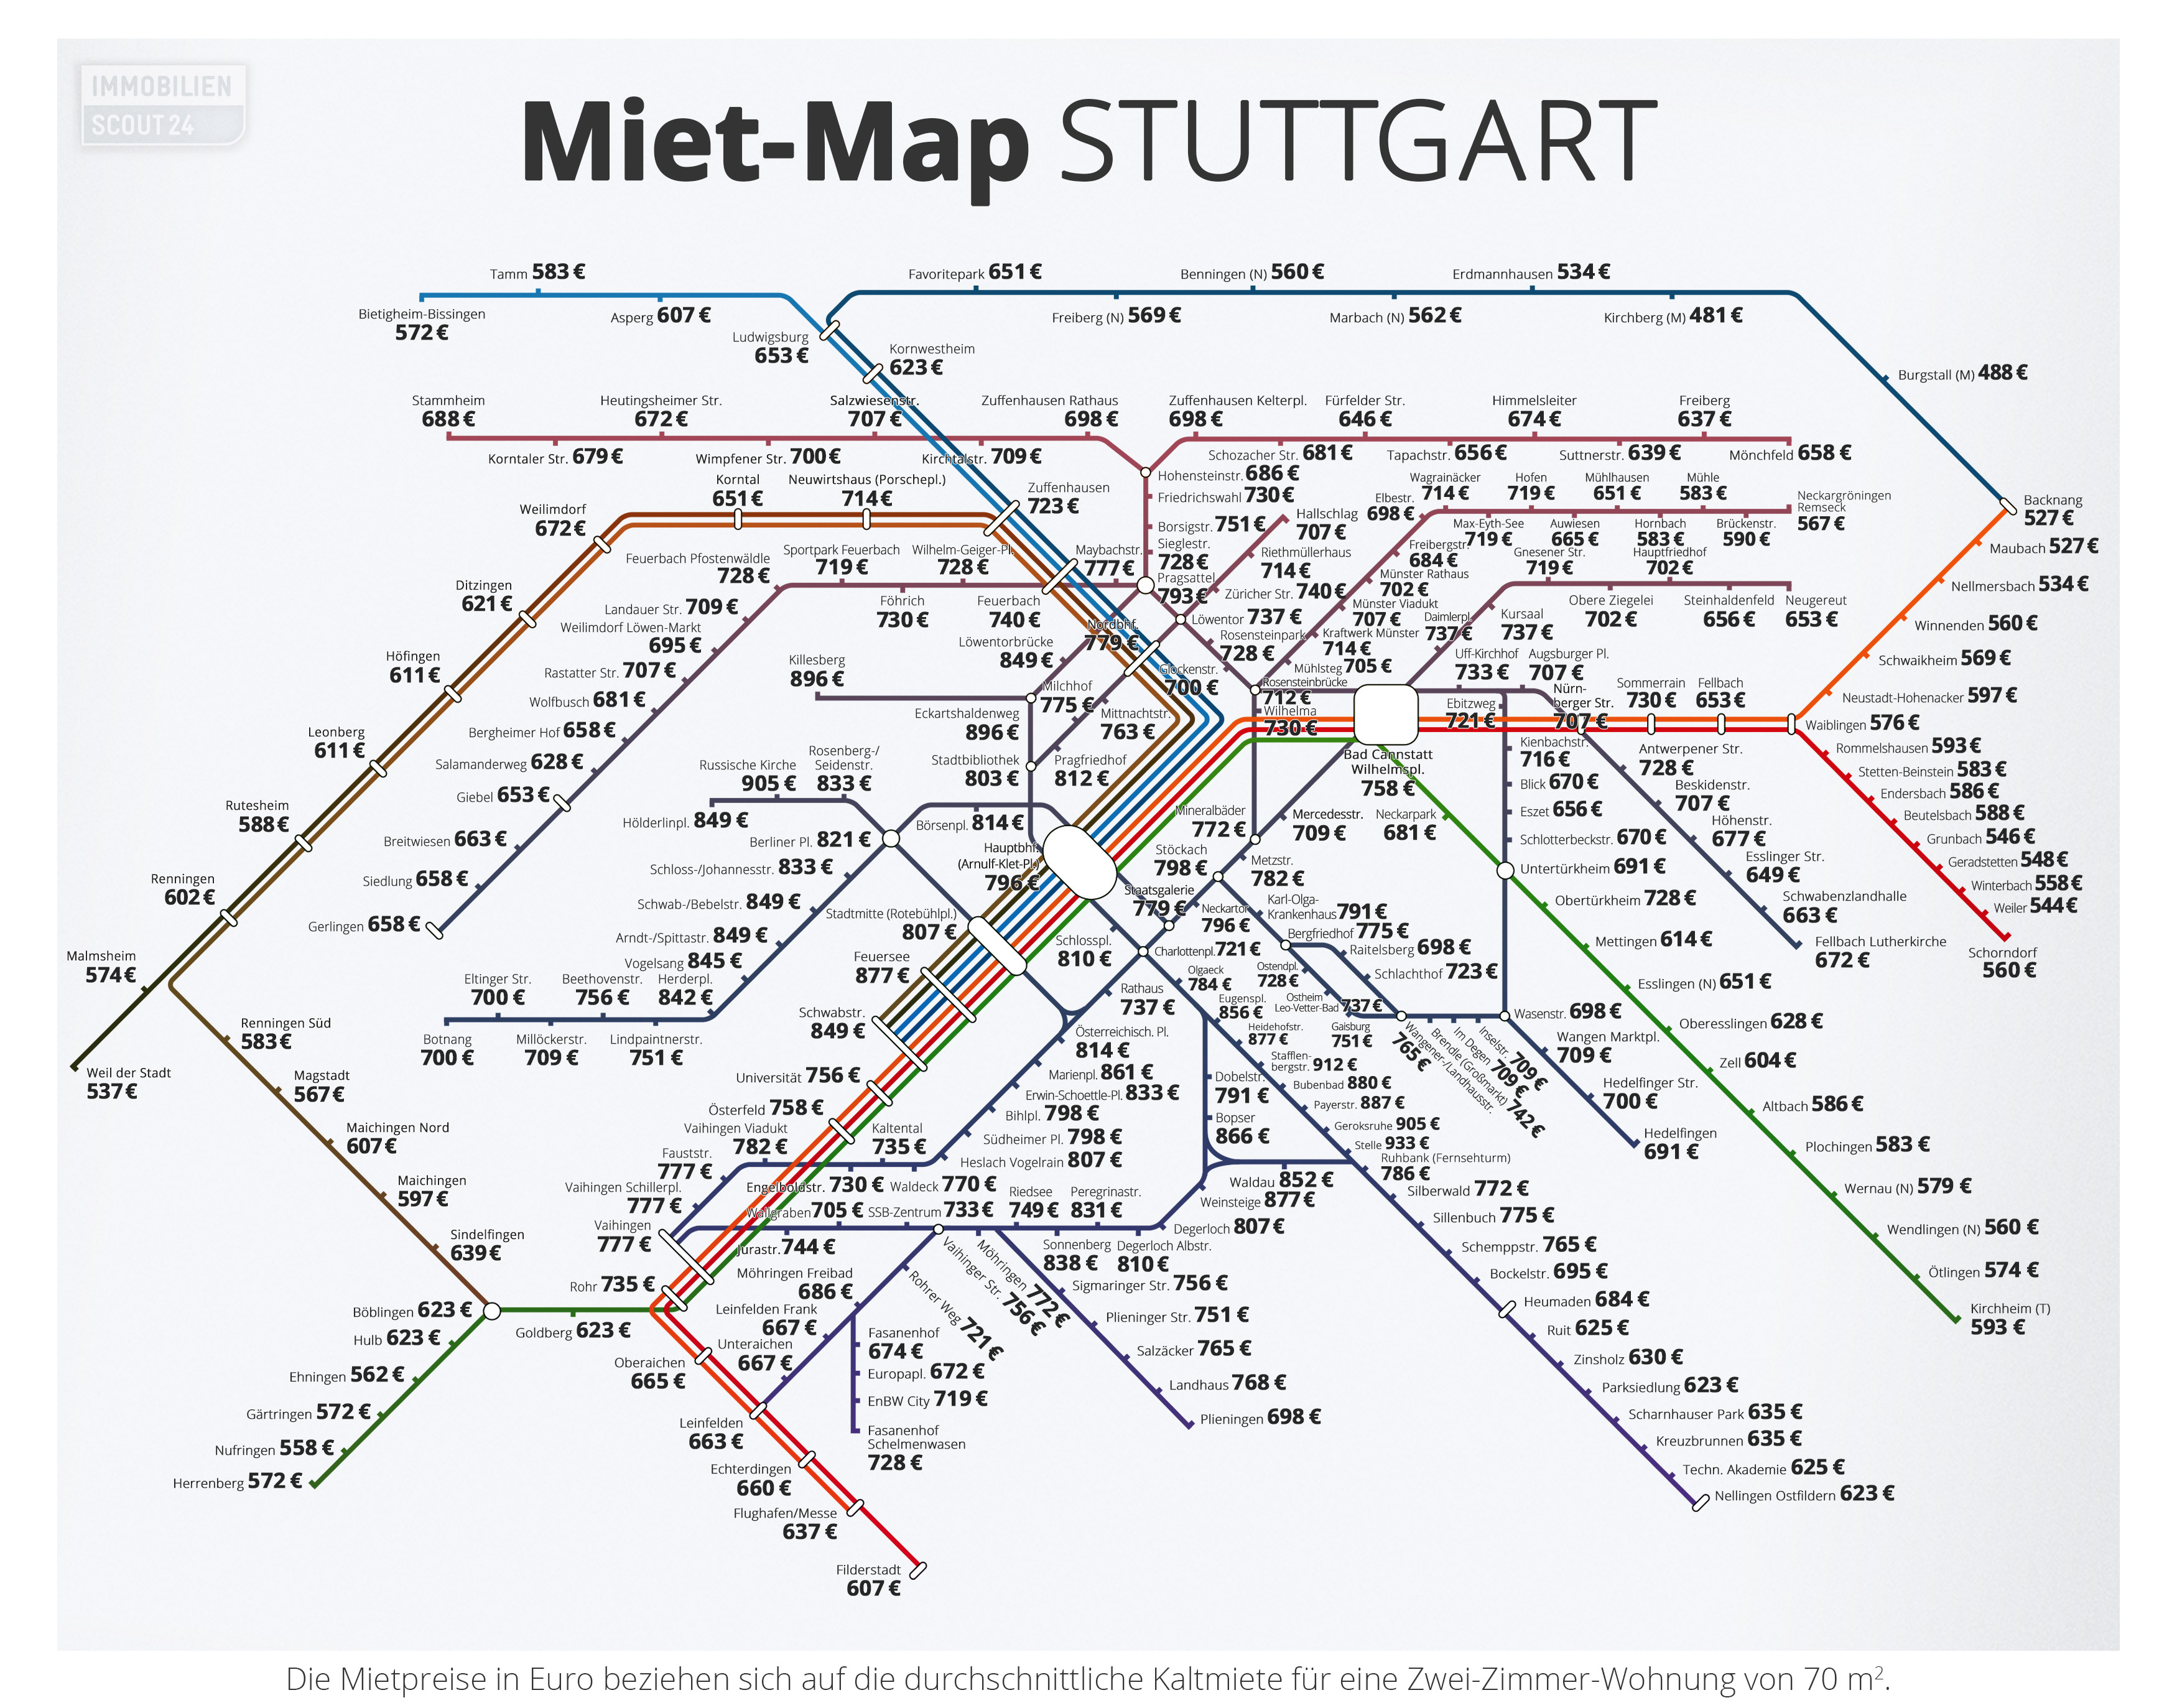 Miet-Map Stuttgart